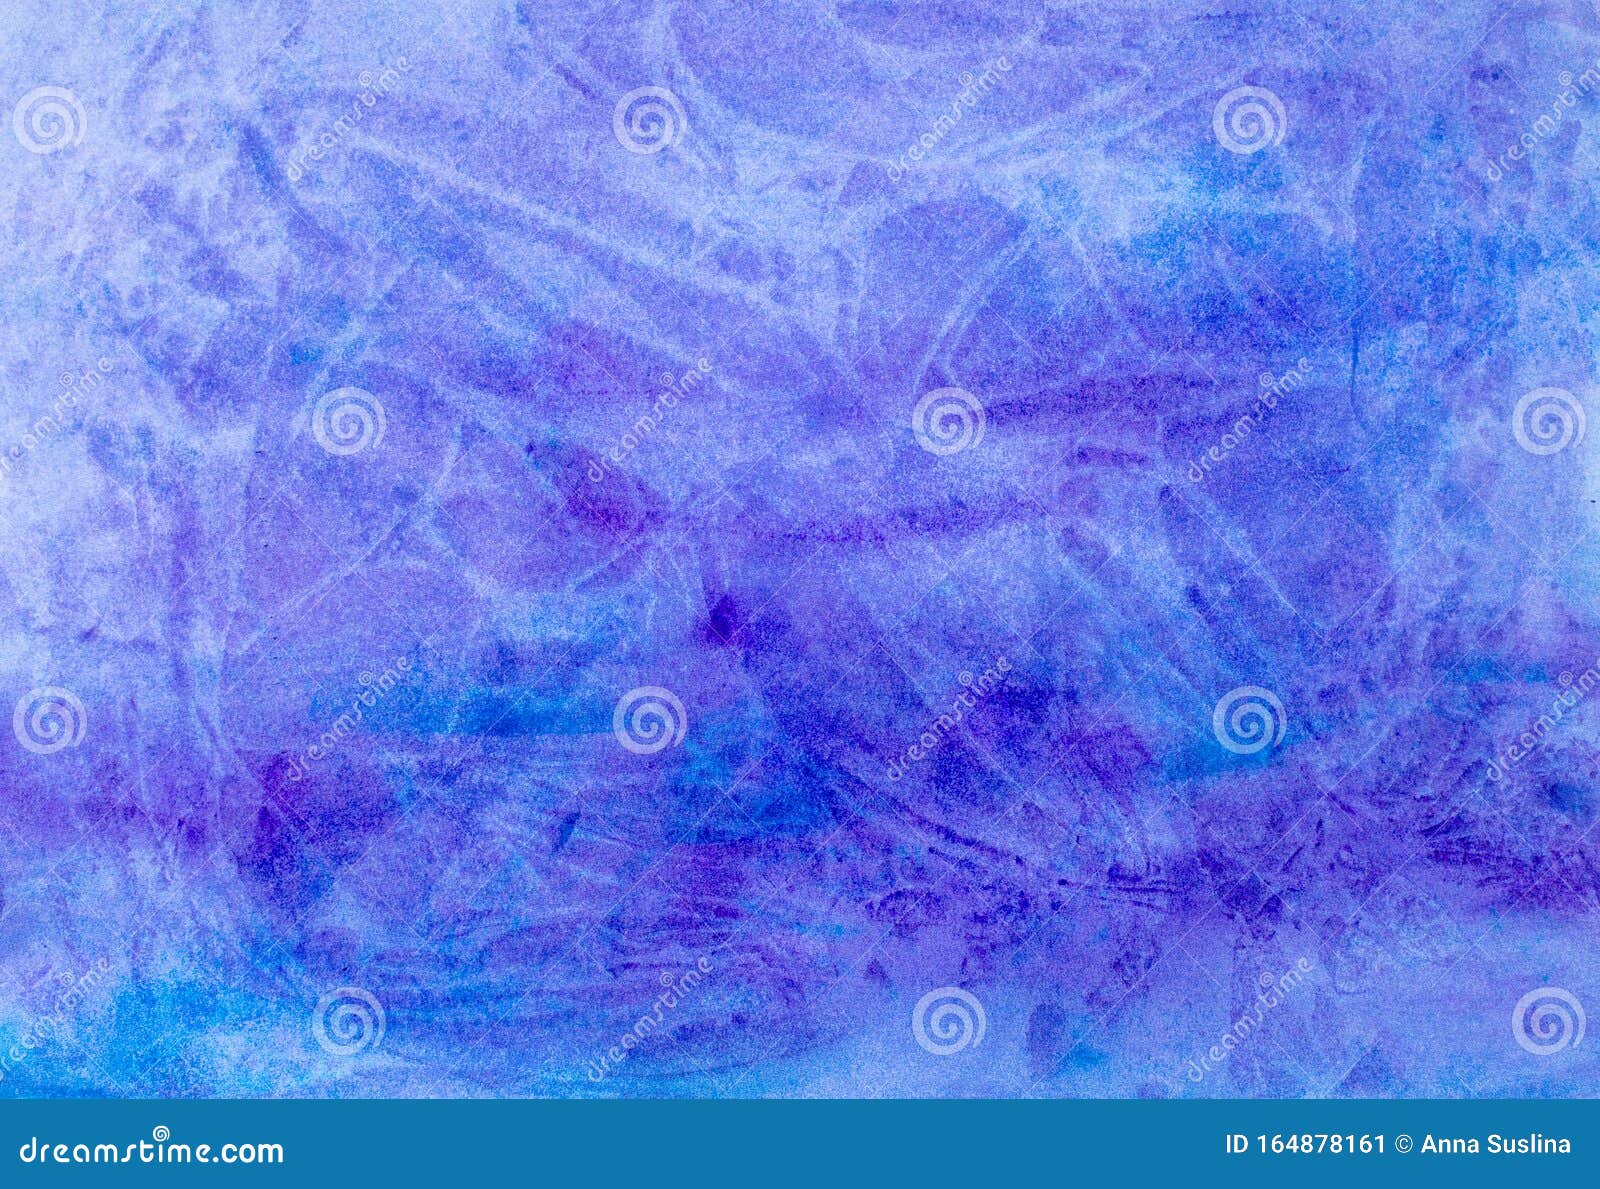 冰冷雪蓝紫色霜冬圣诞水彩漆背景纹理库存图片 图片包括有冰冷雪蓝紫色霜冬圣诞水彩漆背景纹理